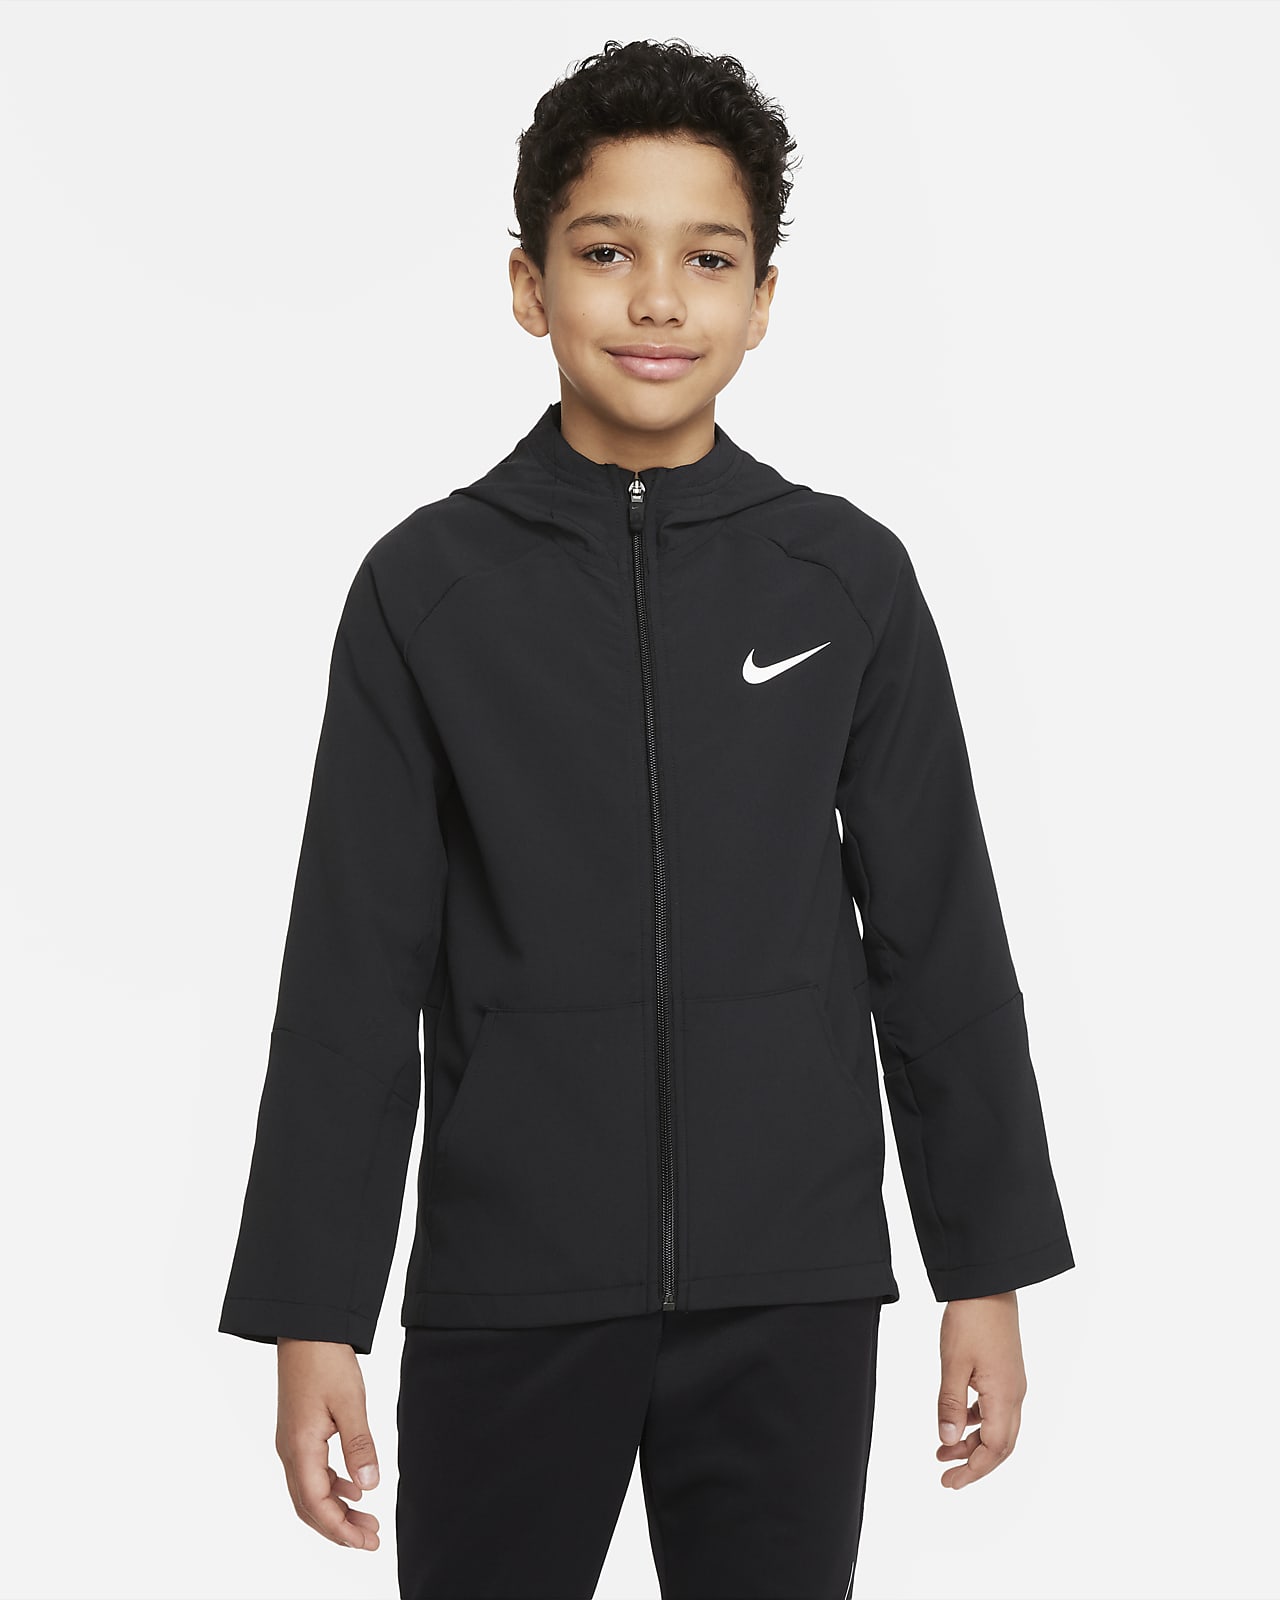 Tkaná tréninková bunda Nike Dri-FIT pro větší děti (chlapce)